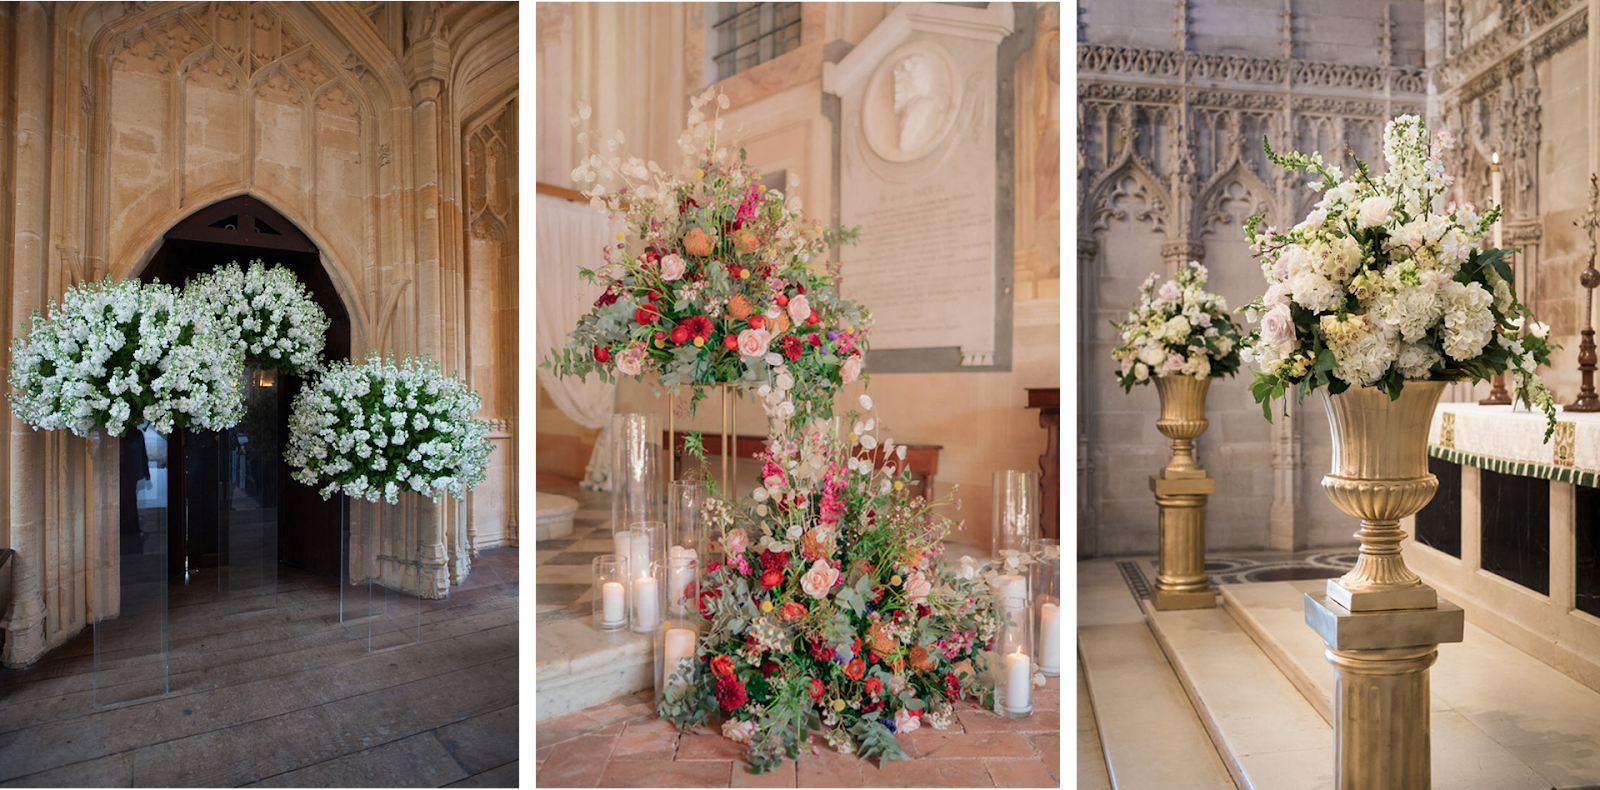 Elegantas baznīcas kāzu dekorācijas idejas - Attēls: Pinterest